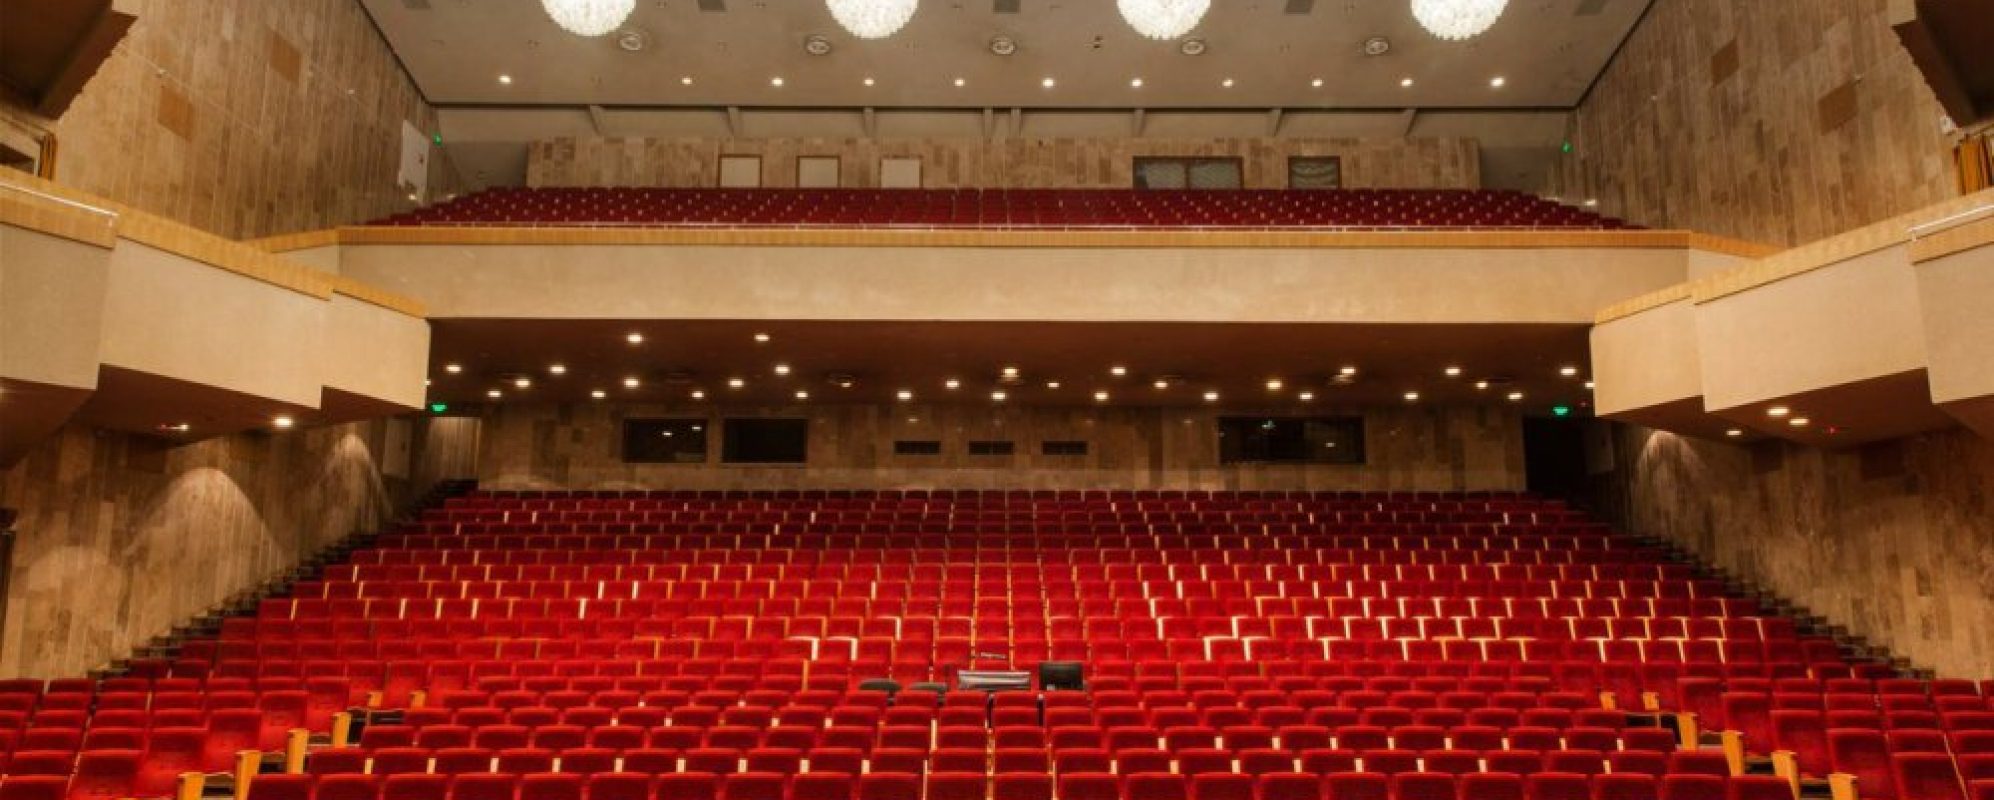 Фотографии концертного зала Концертный зал Дворца спорта и культуры